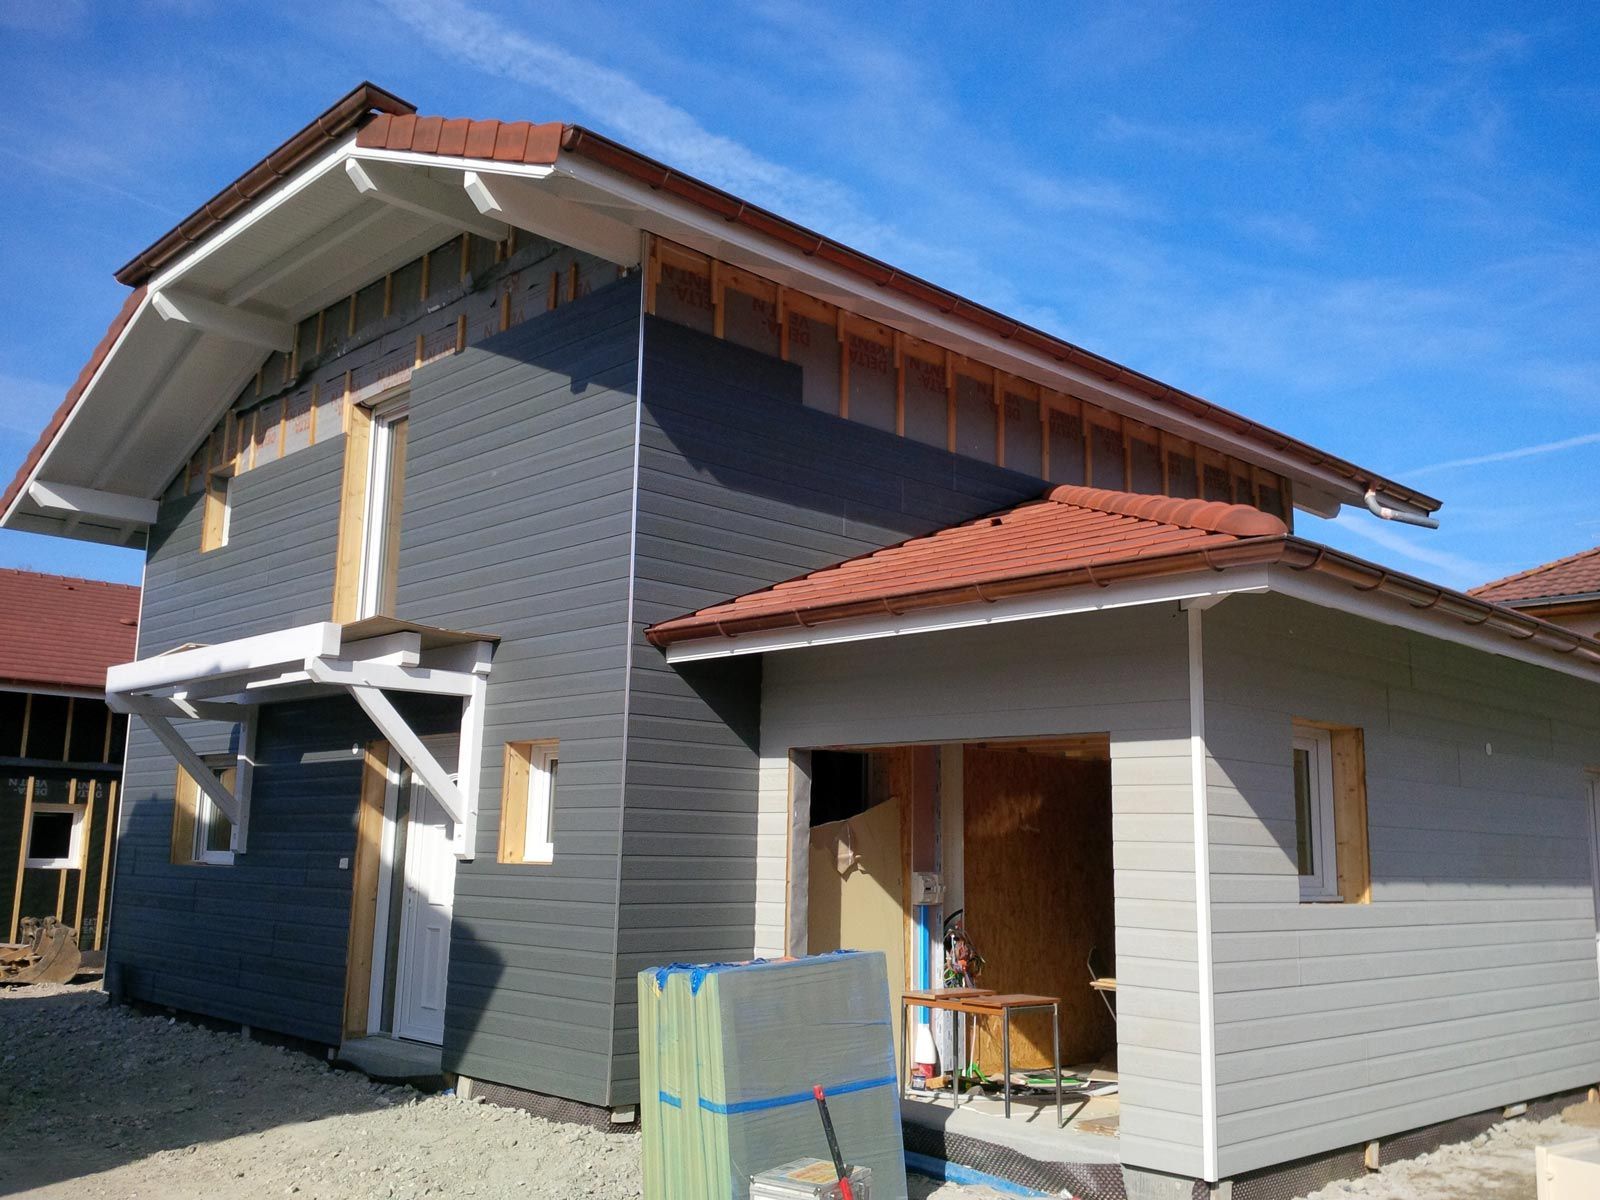 Landhaus mit Fassade in Holzoptik während der Bauphase.